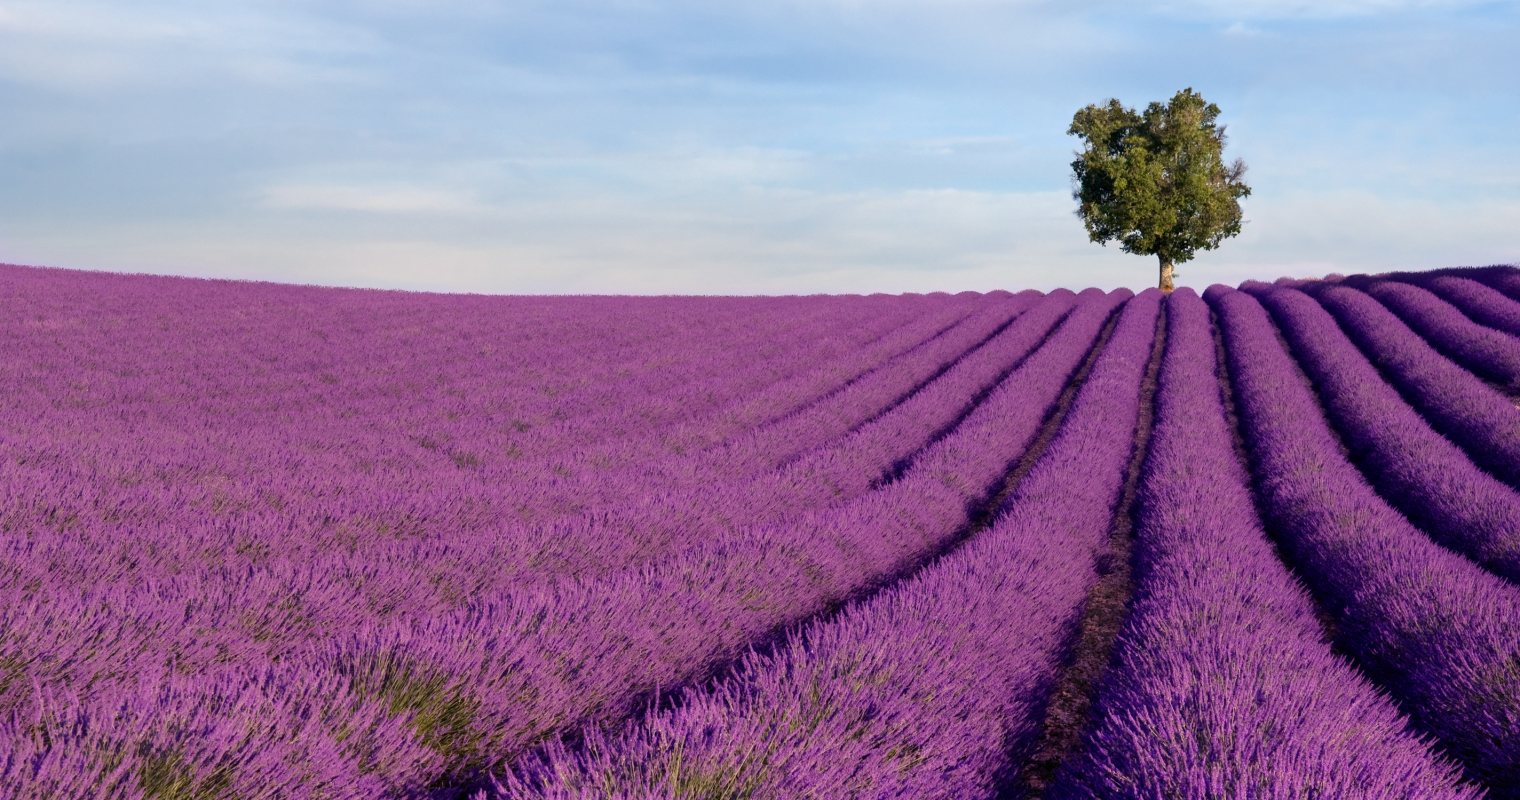 Hoa Lavender (còn gọi là hoa oải hương) cực kỳ nổi tiếng ở miền Nam nước Pháp